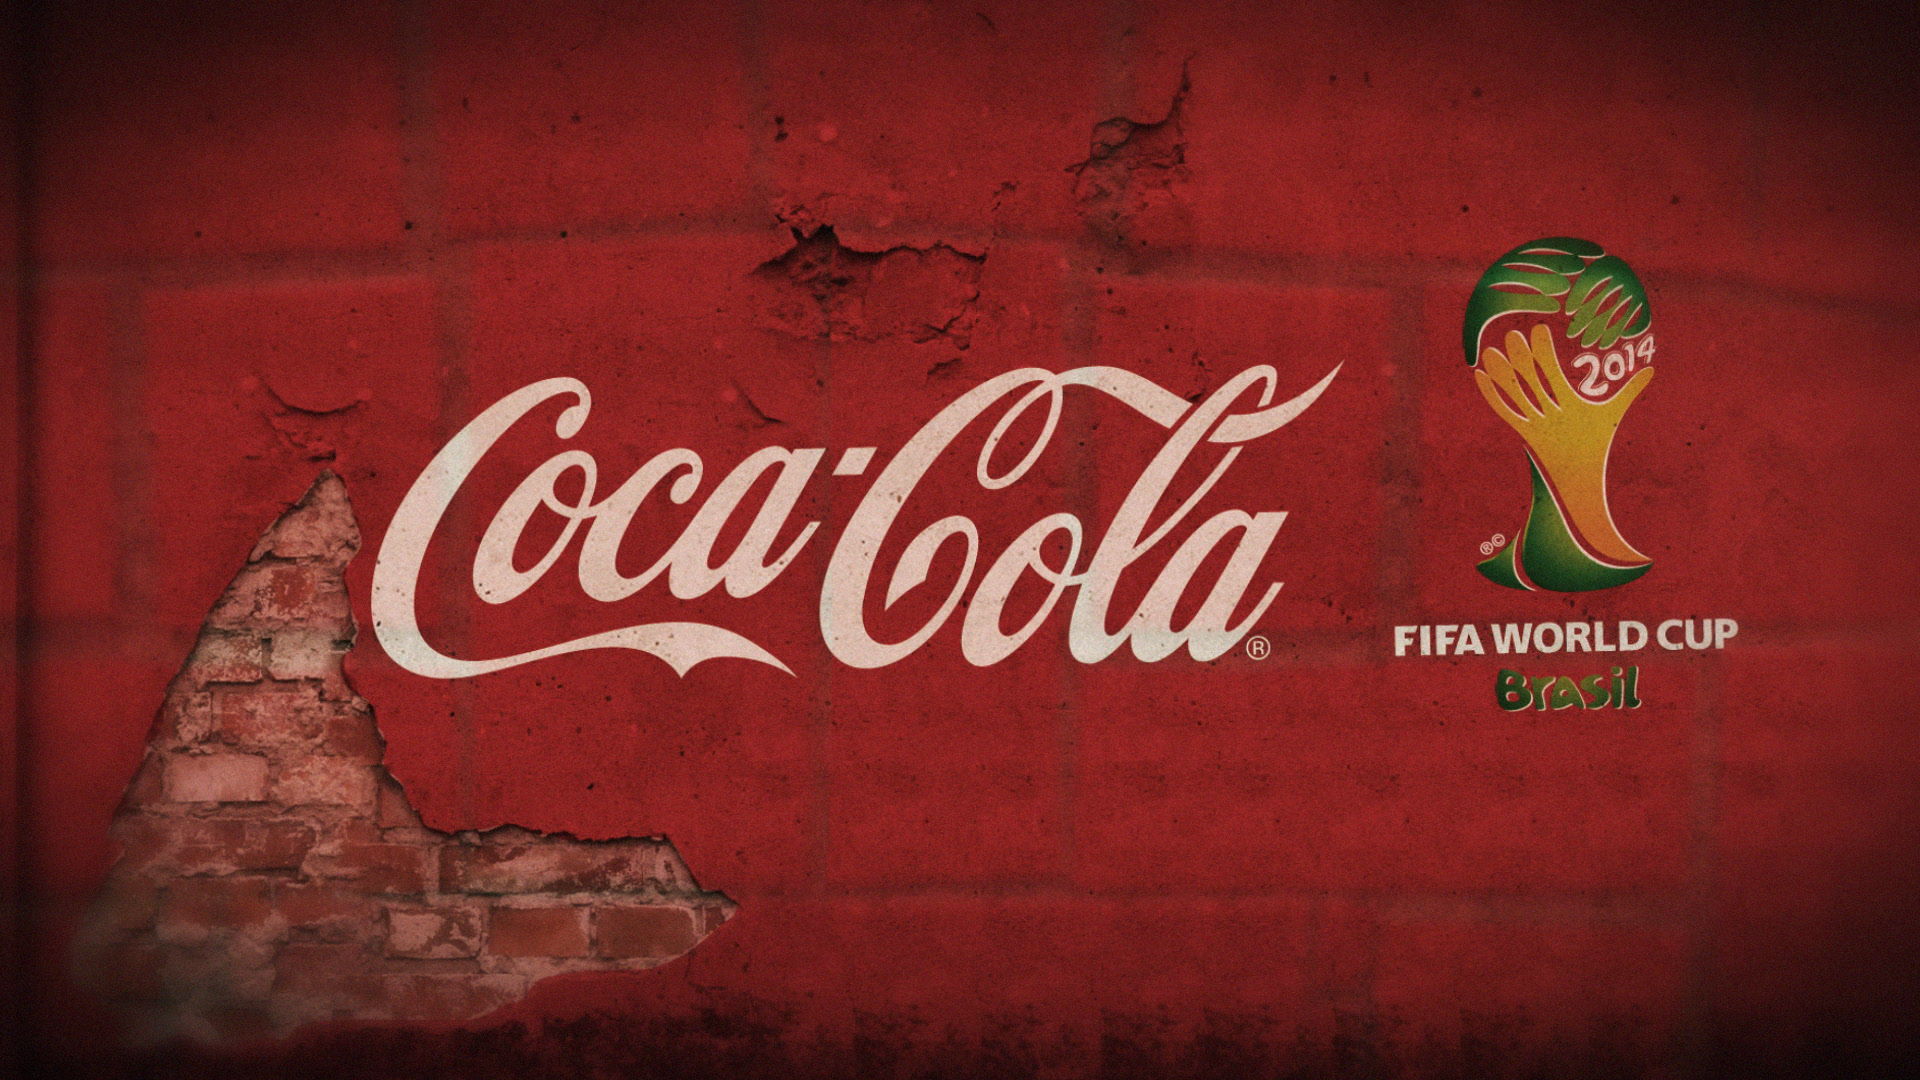 Coca Cola World Cup